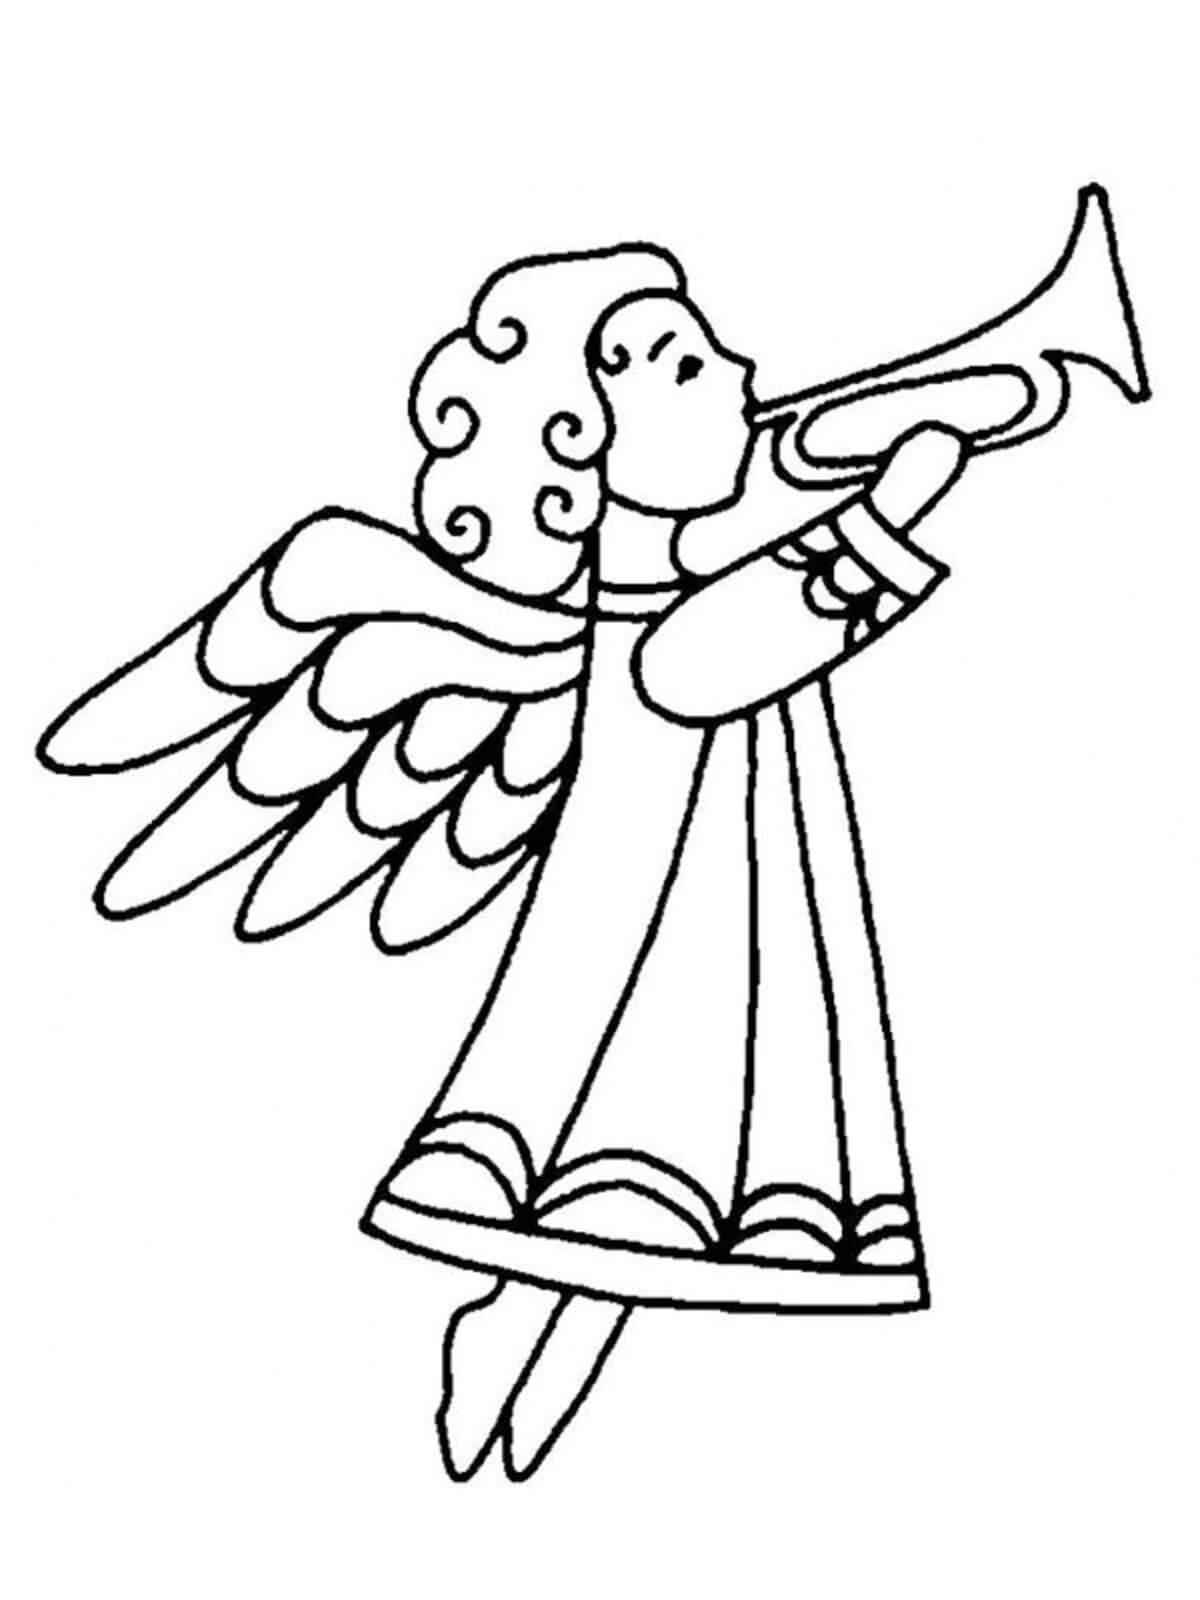 De engel van de tekening speelt de trompet